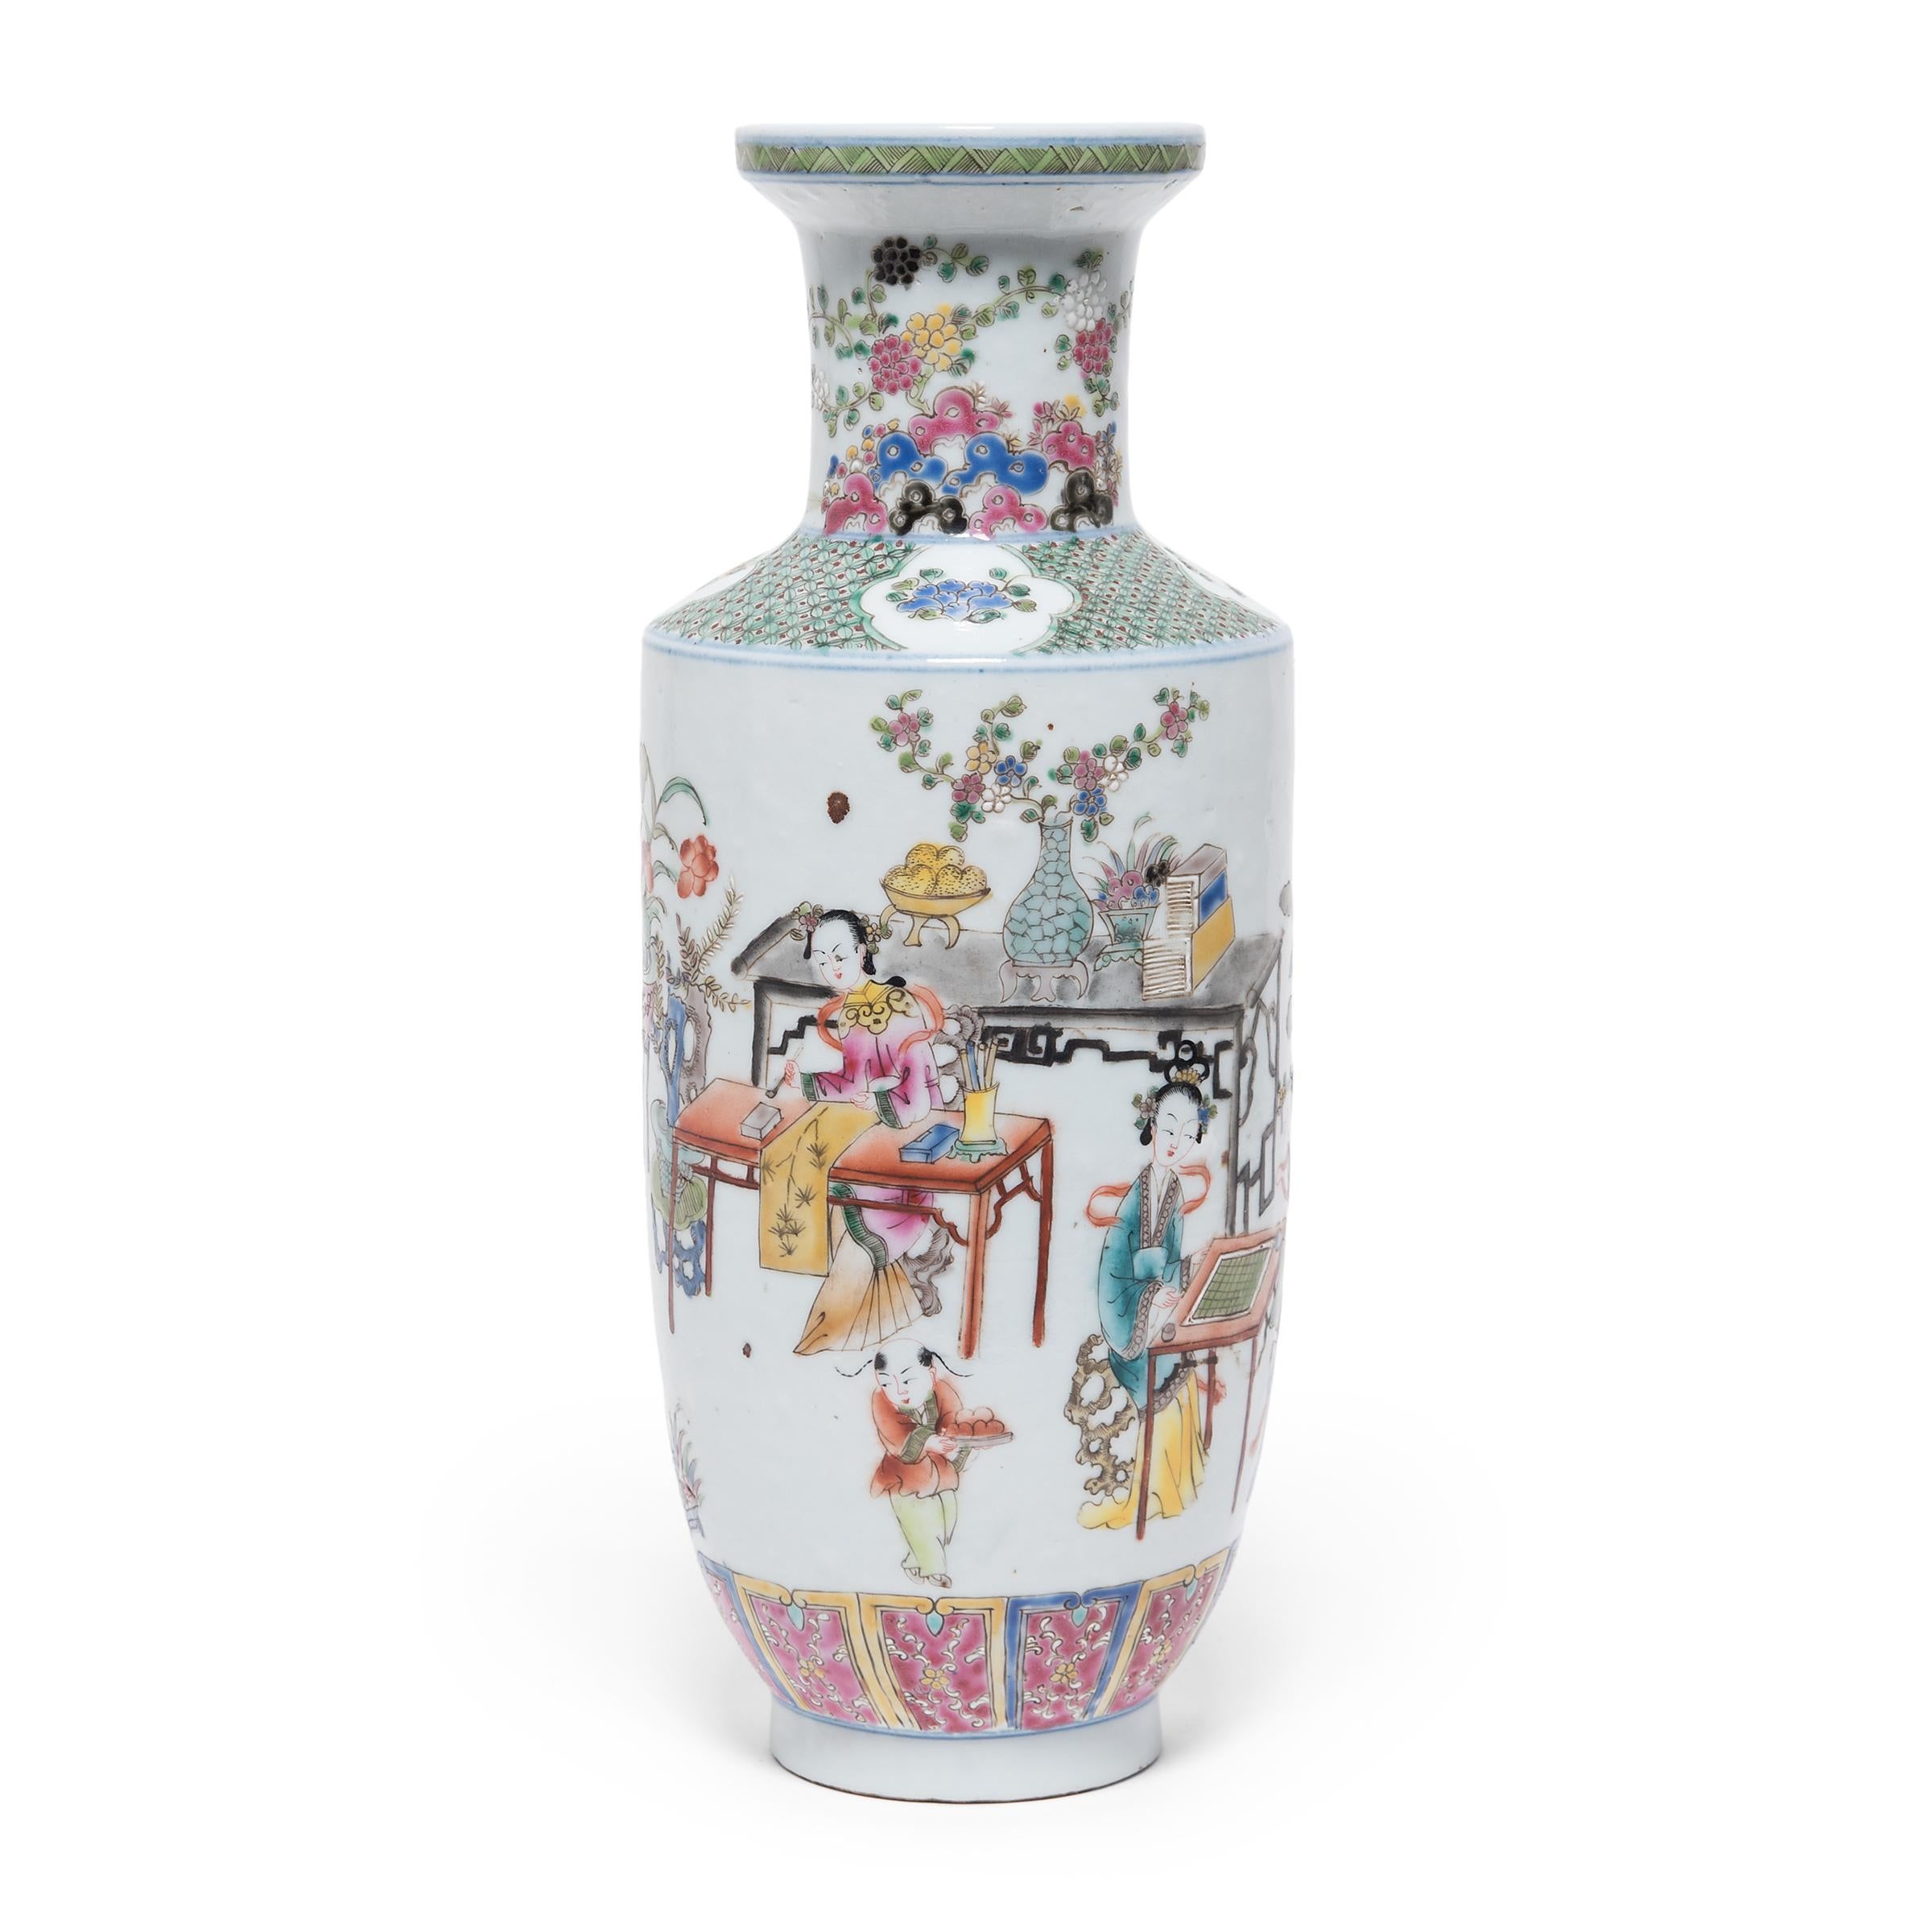 Au cours du XVIIIe siècle, les Européens ont constitué un marché très prisé pour la porcelaine d'exportation chinoise, en particulier les articles colorés et fantaisistes connus sous le nom de 